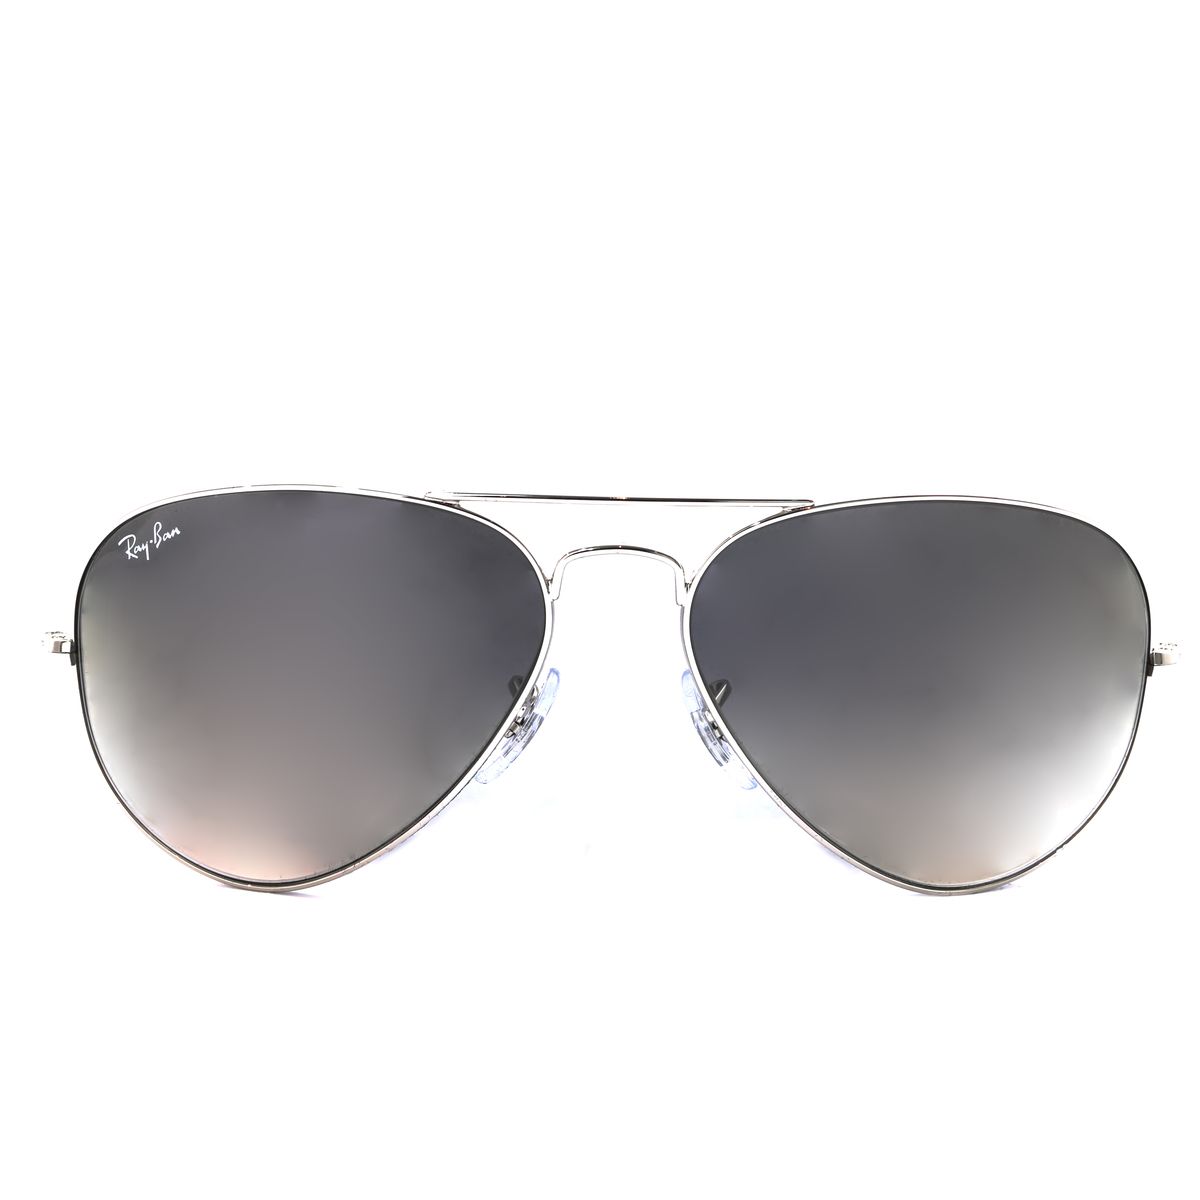 RB3025 Pilot Sunglasses 0003 32 - size 58